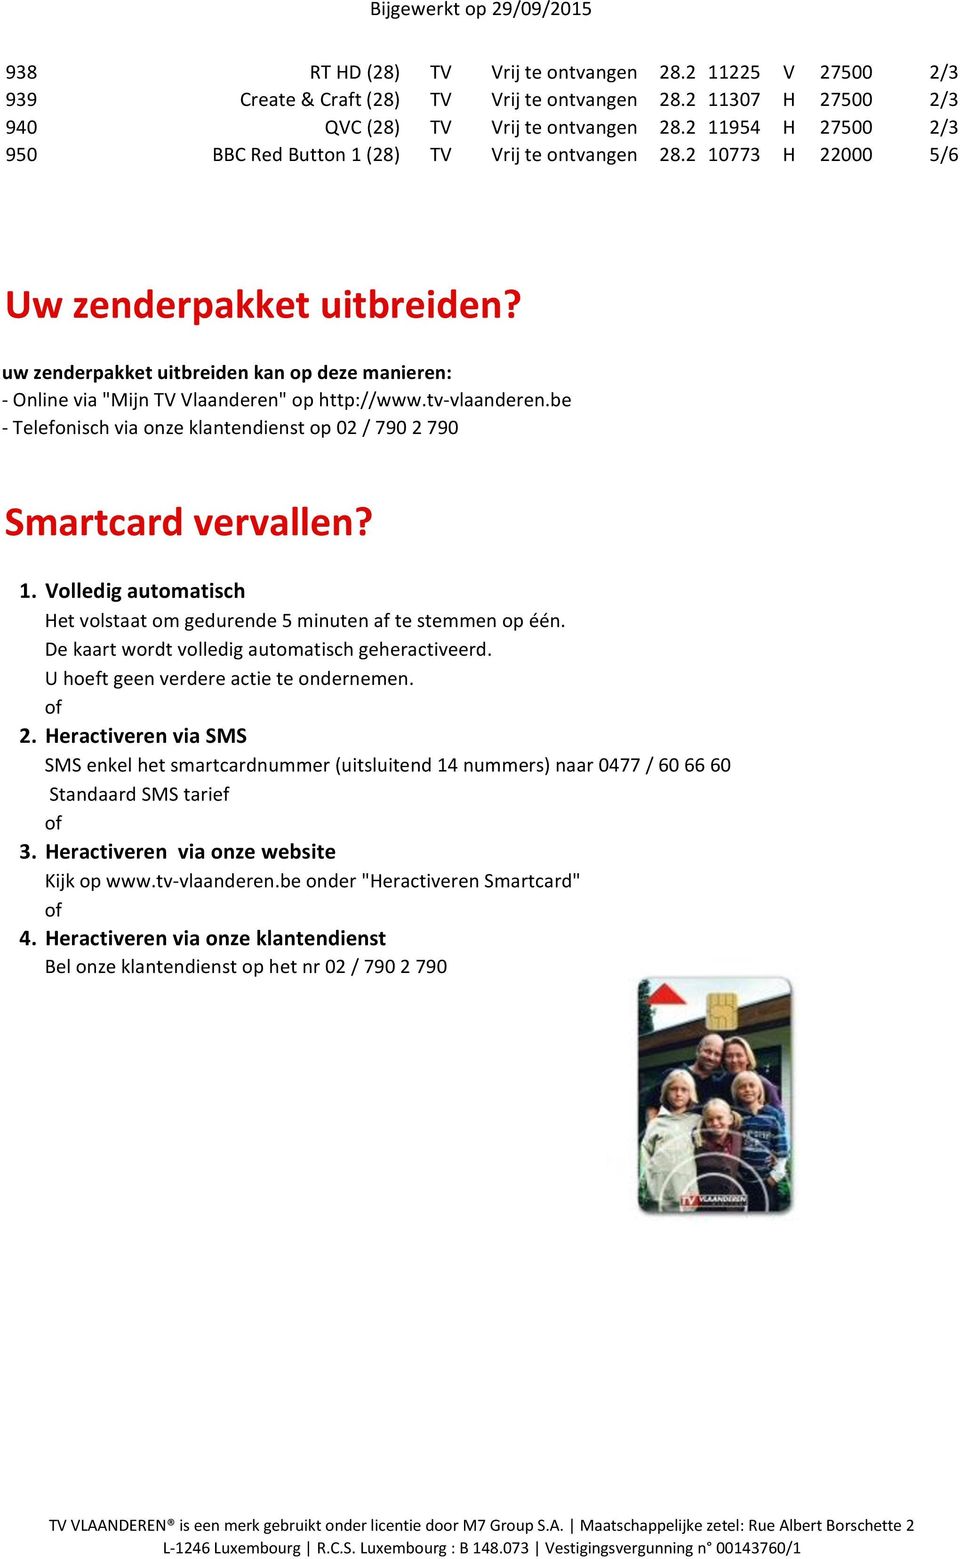 uw zenderpakket uitbreiden kan op deze manieren: - Online via "Mijn TV Vlaanderen" op http://www.tv-vlaanderen.be - Telefonisch via onze klantendienst op 02 / 790 2 790 Smartcard vervallen? 1.